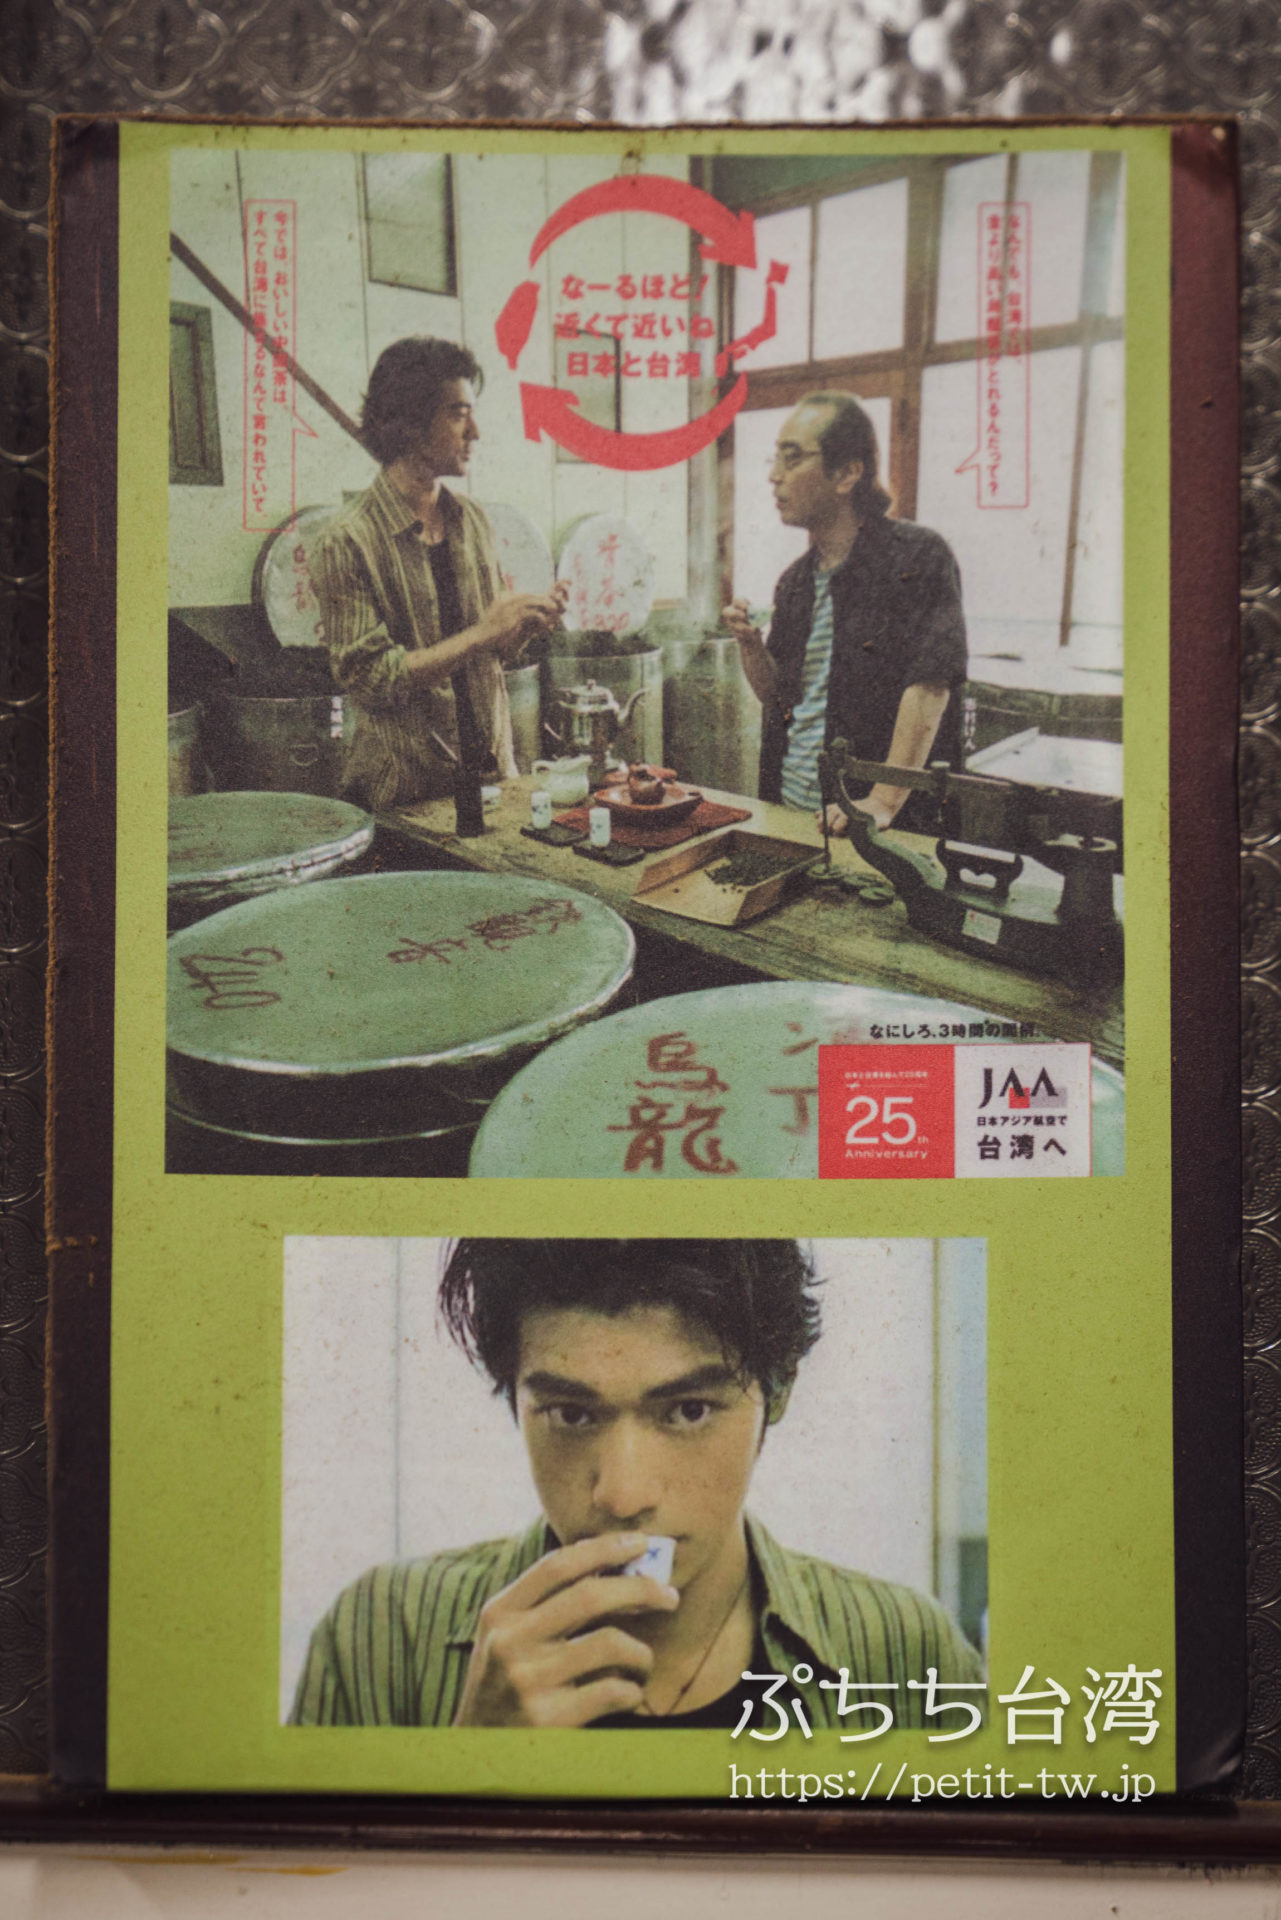 林華泰茶行の店内のポスター